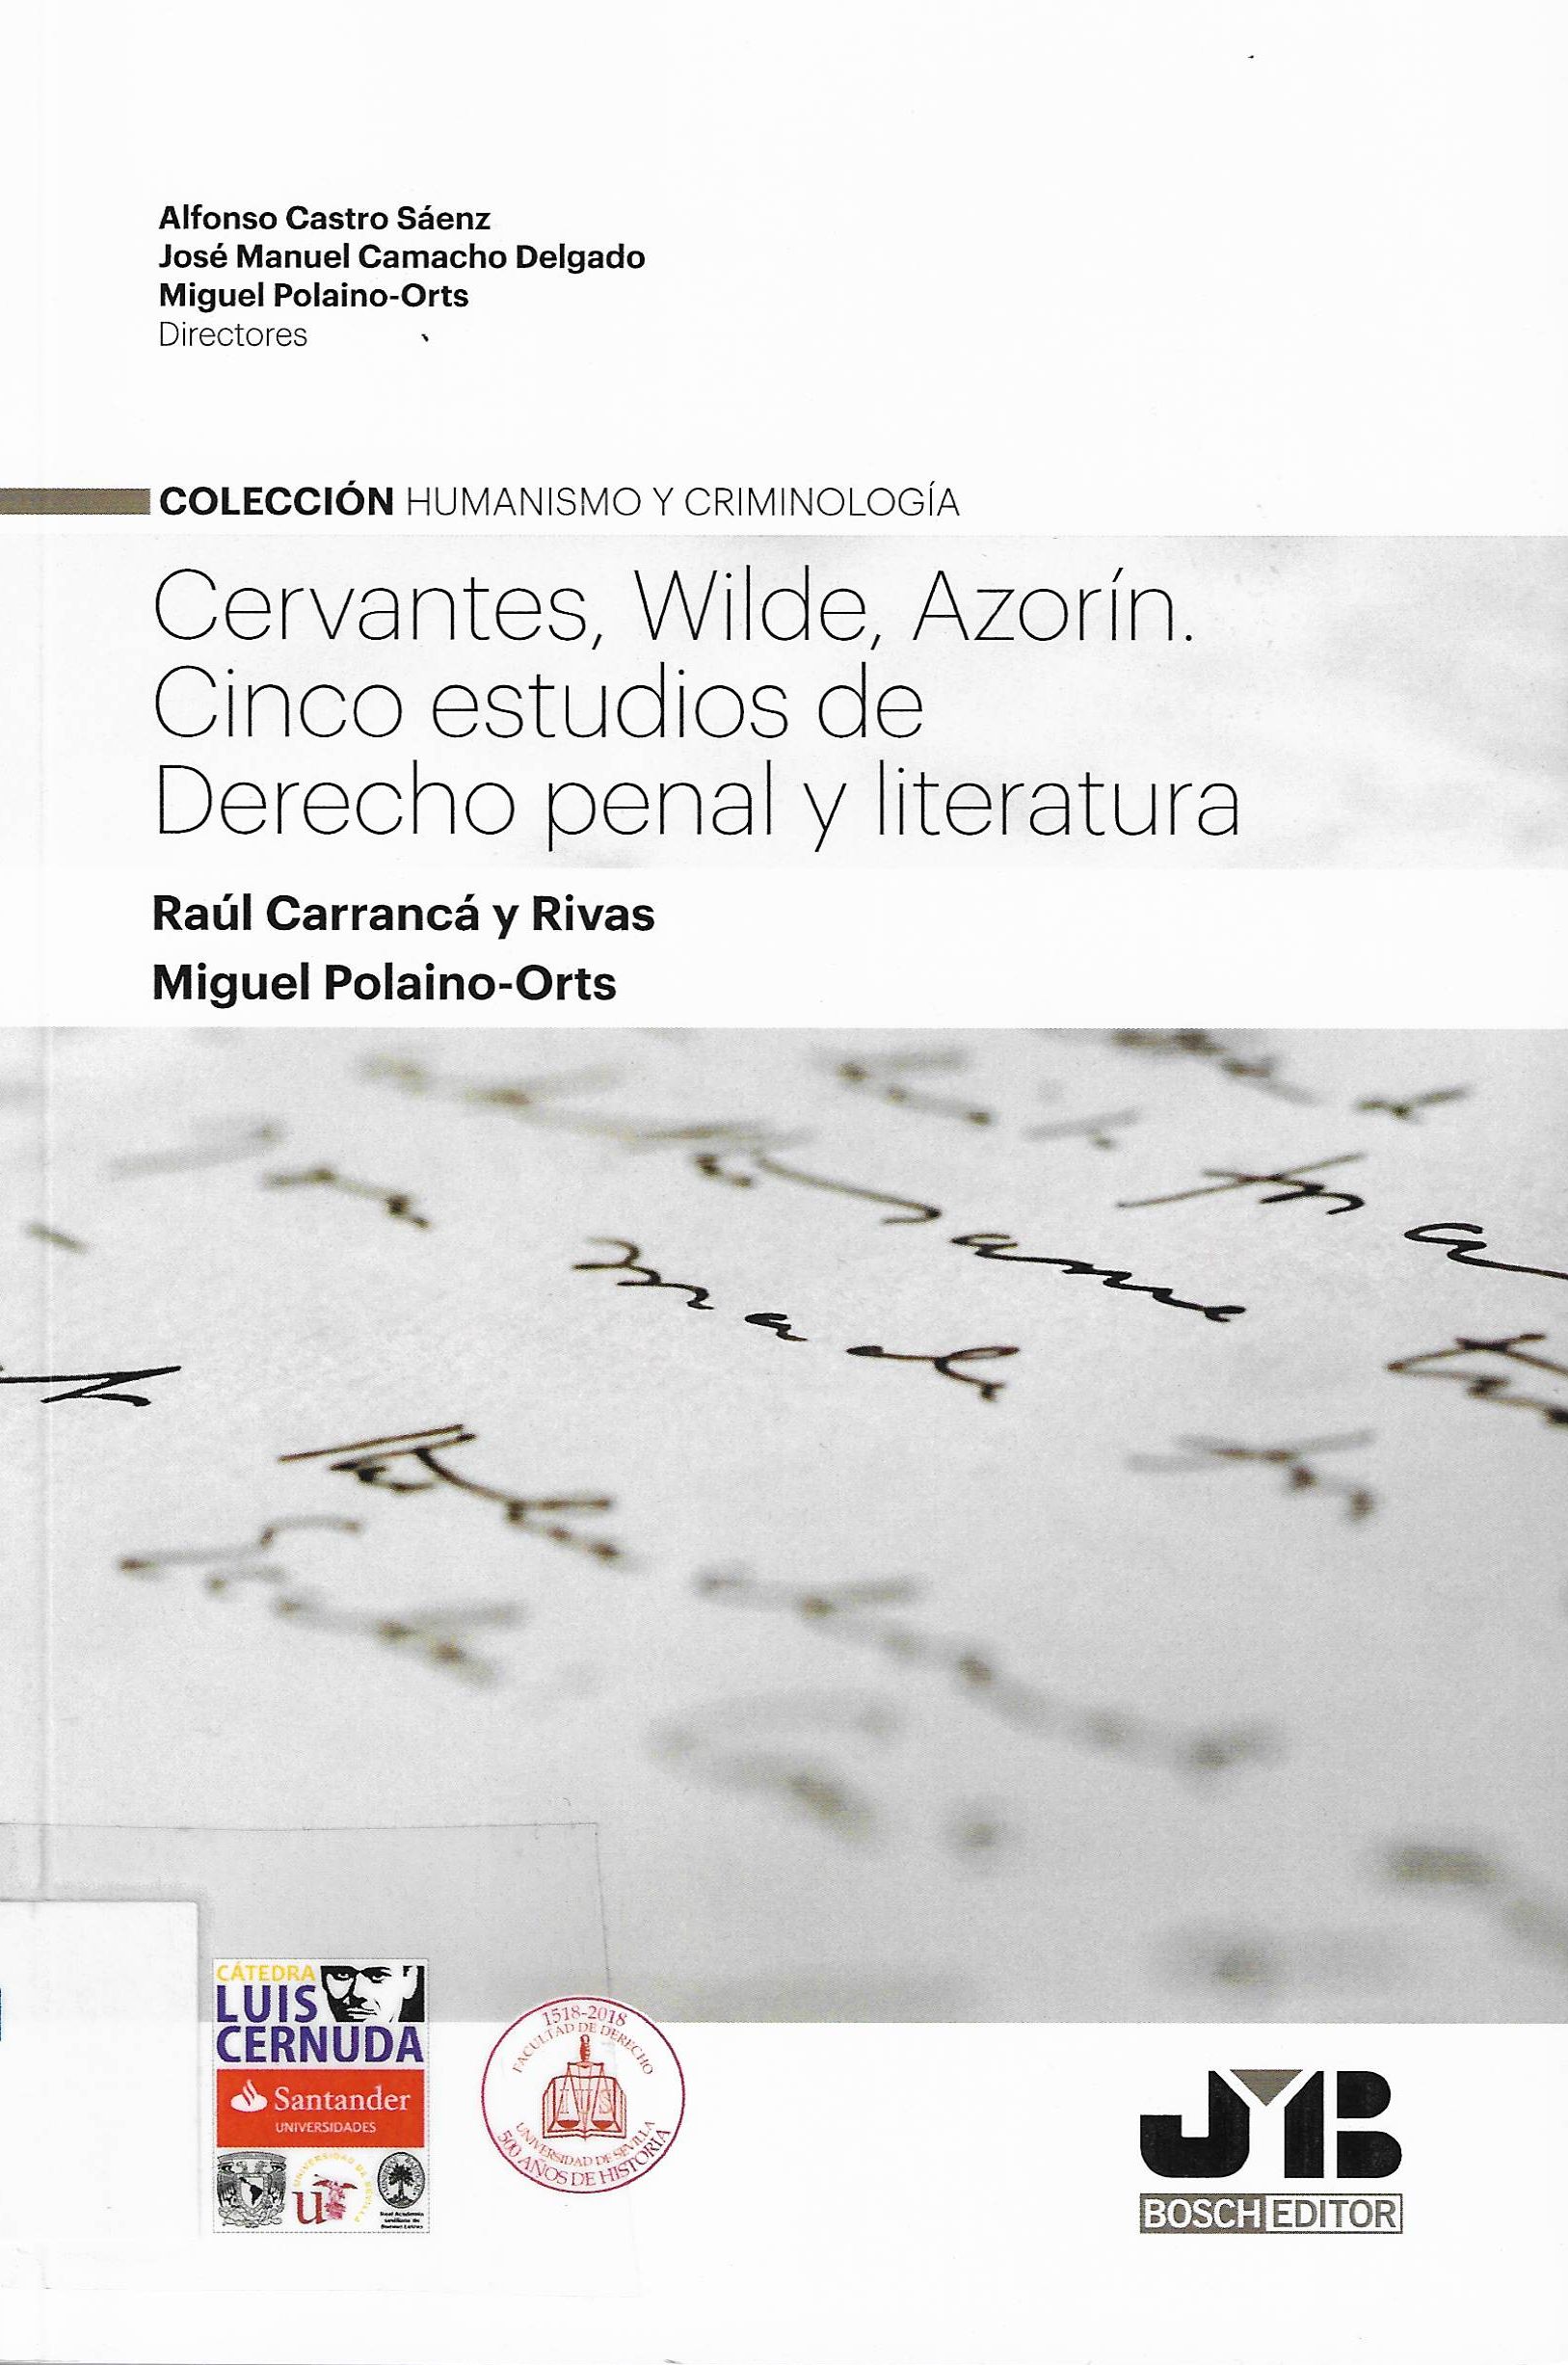 Imagen de portada del libro Cervantes, Wilde, Azorín